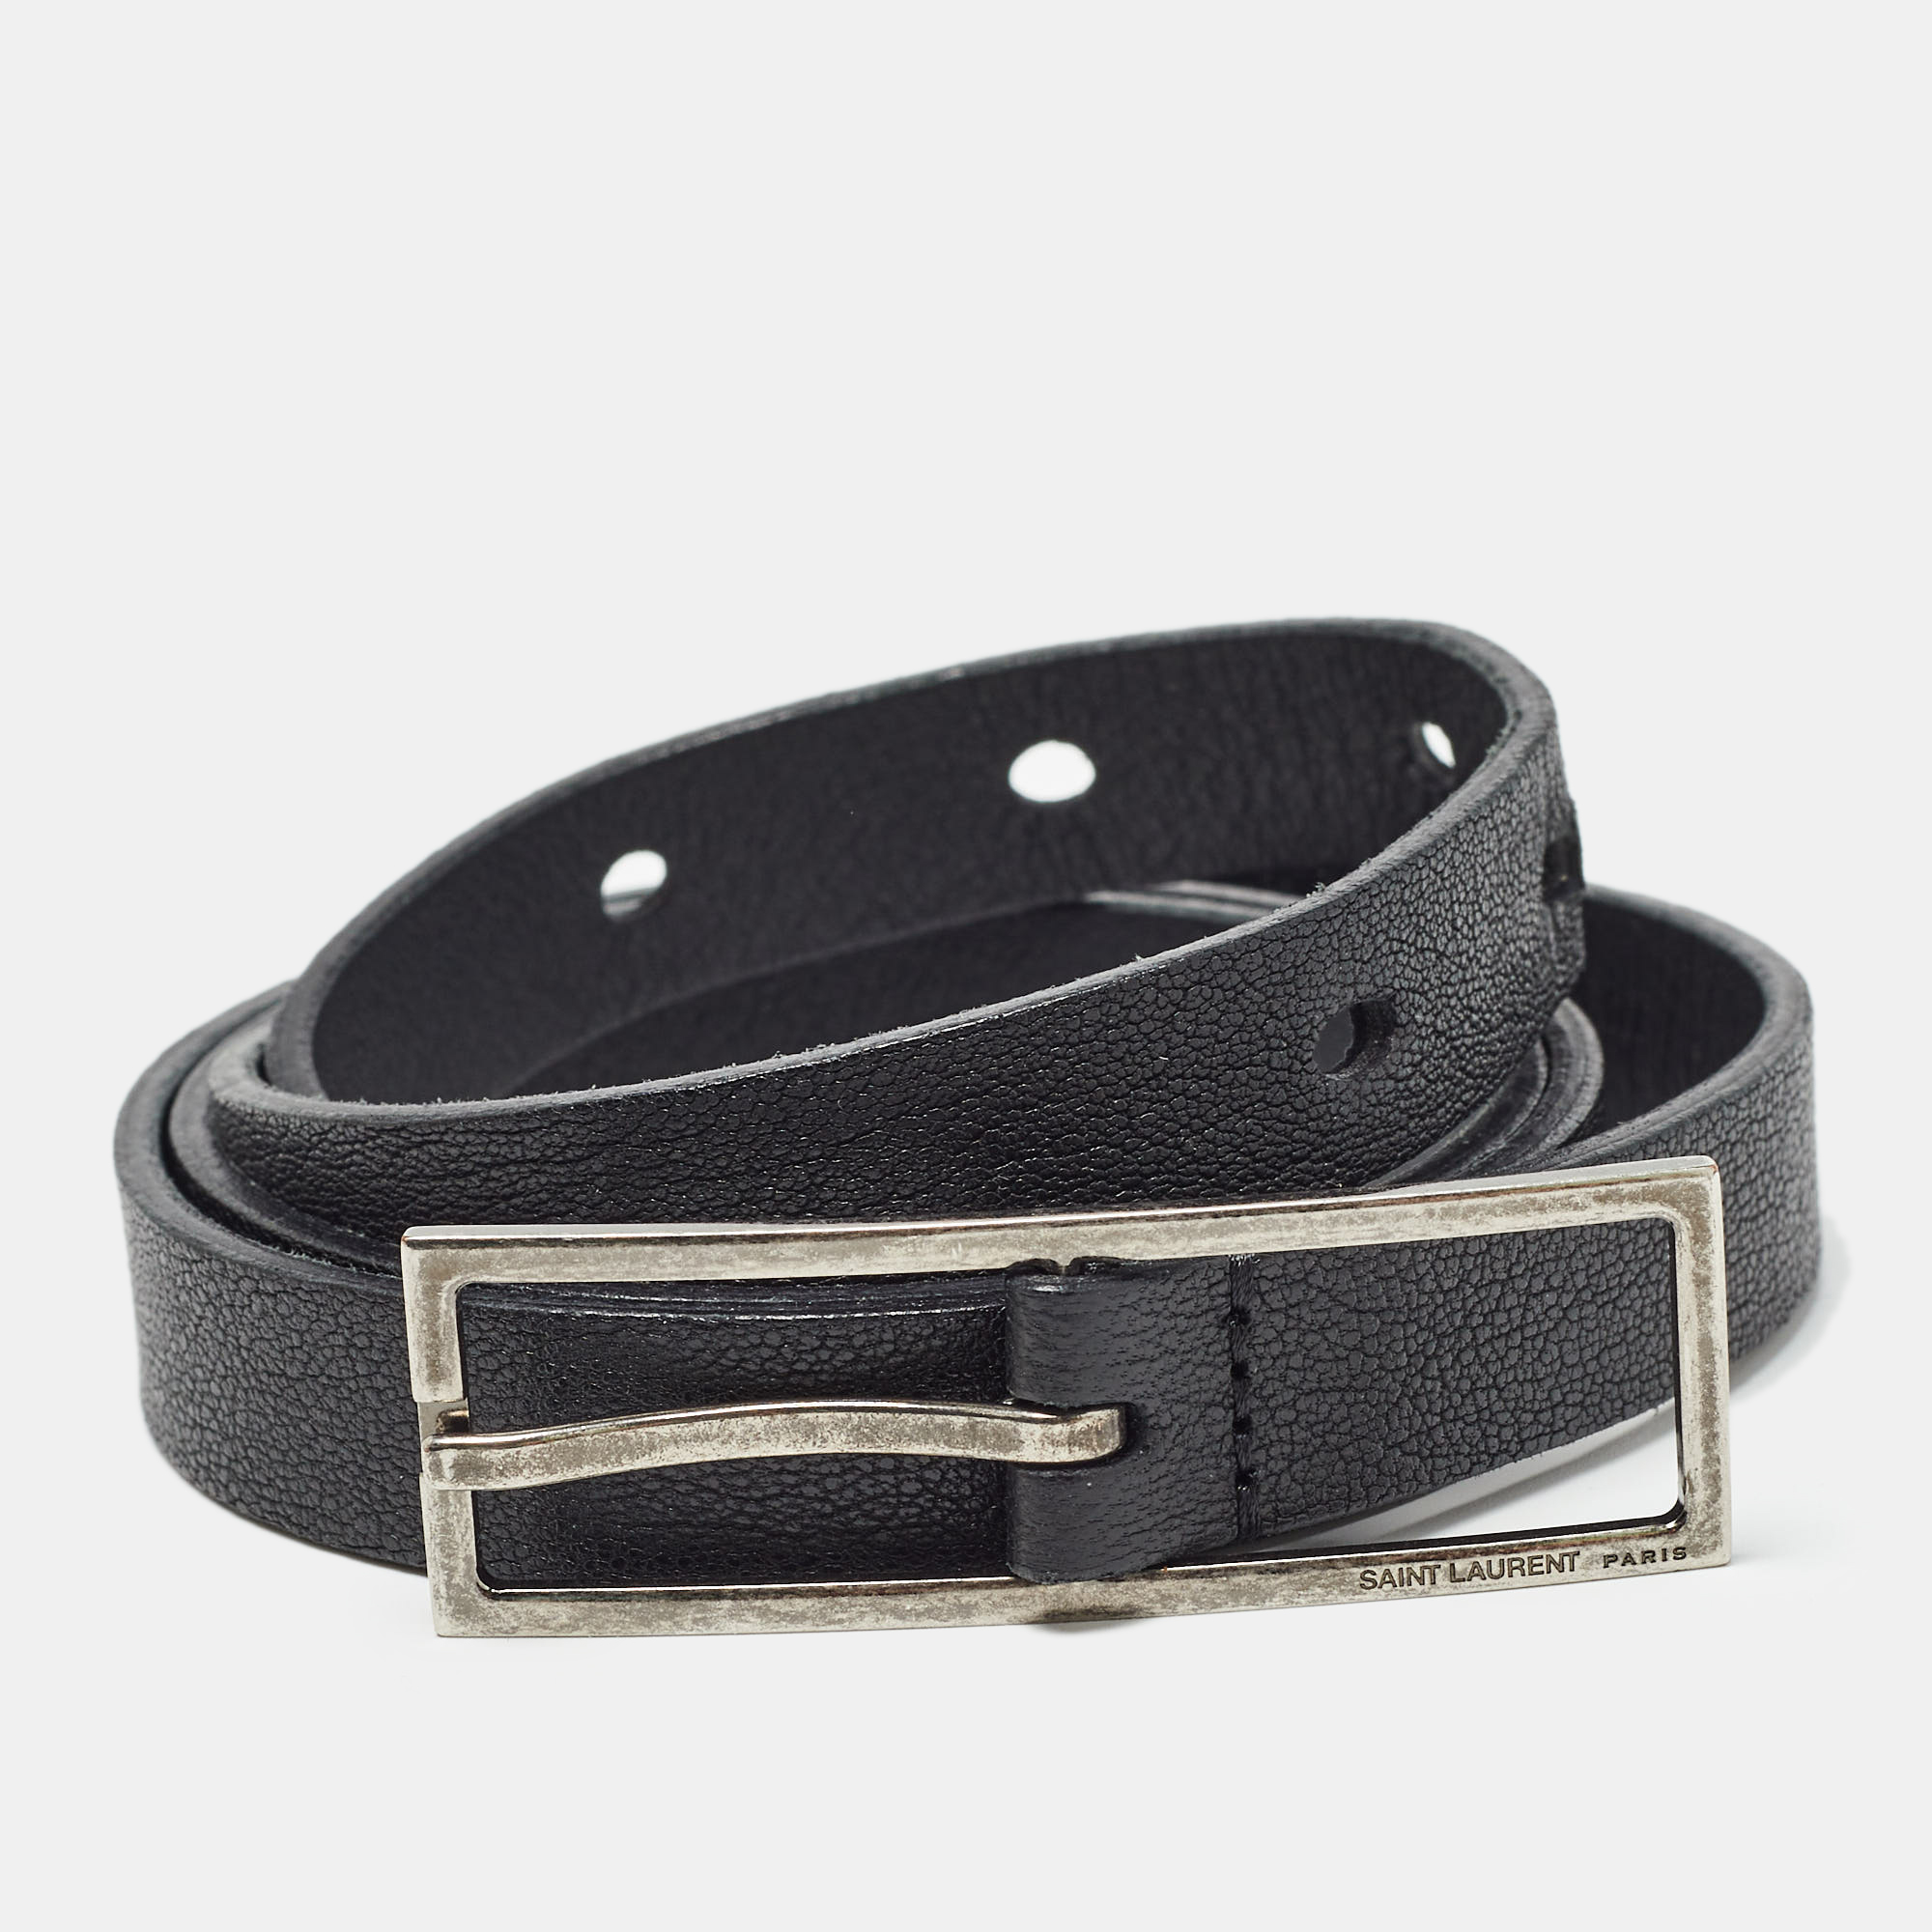 Saint laurent paris saint laurent black leather slim buckle belt 80cm